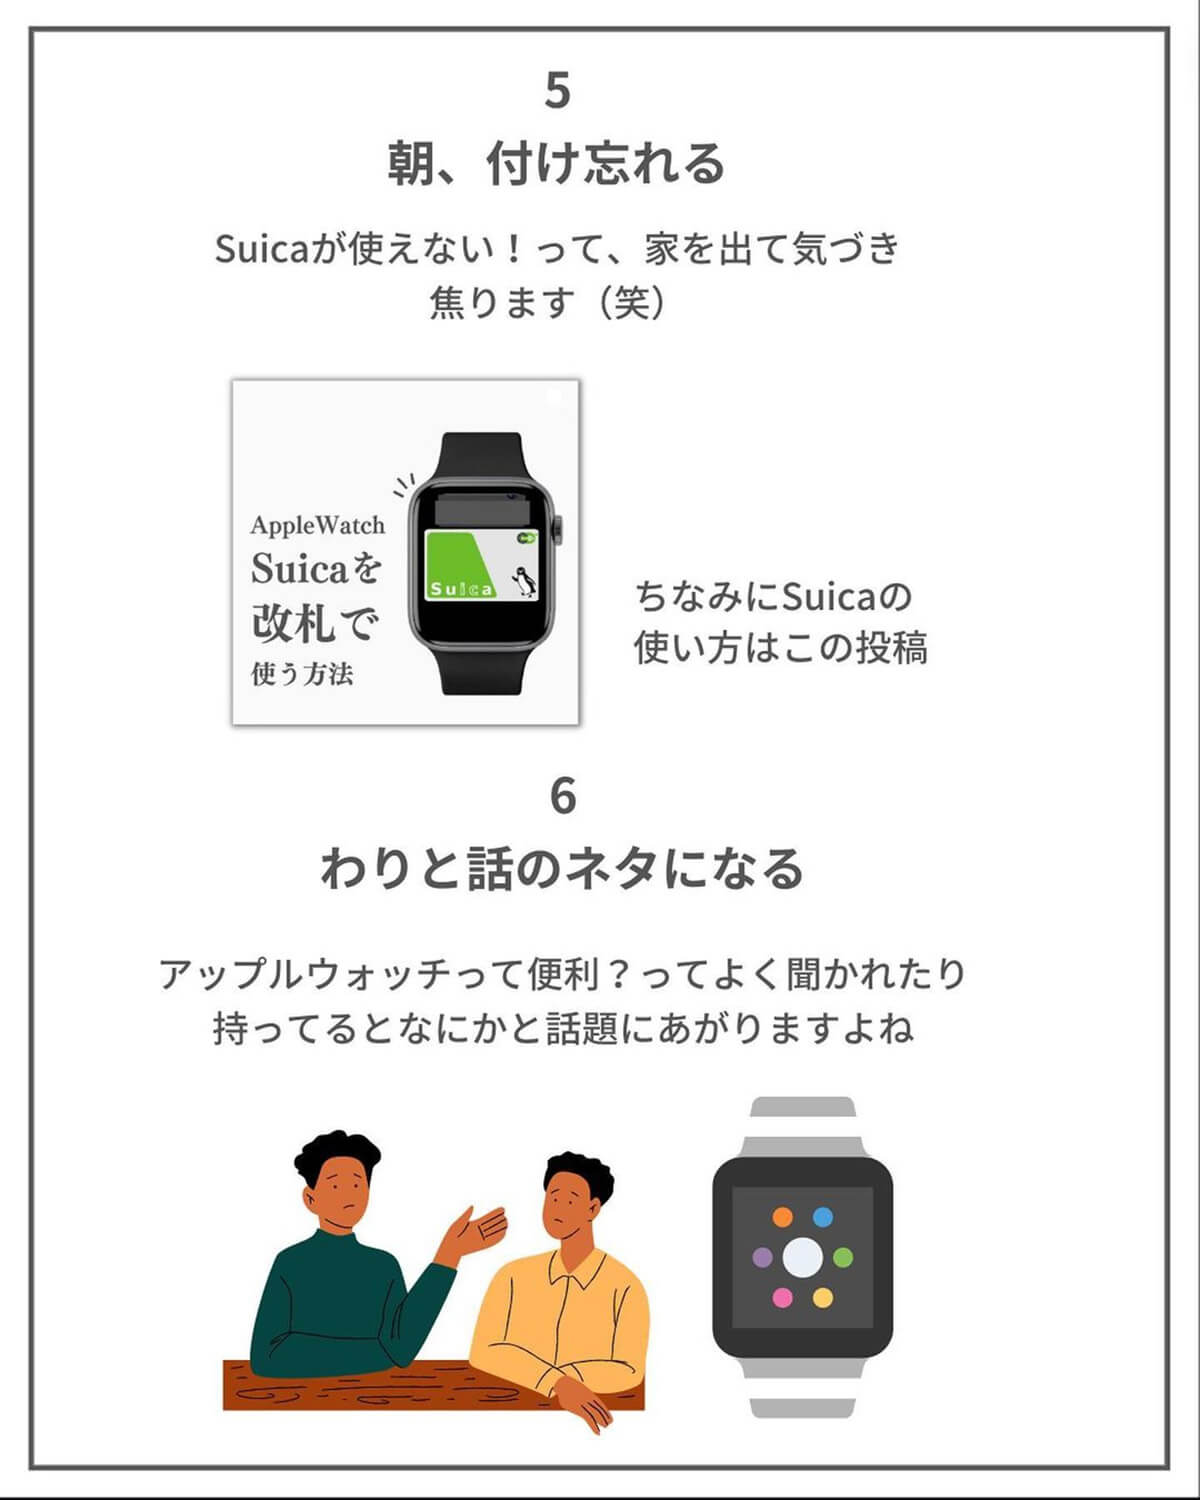 Apple Watchあるある5.6